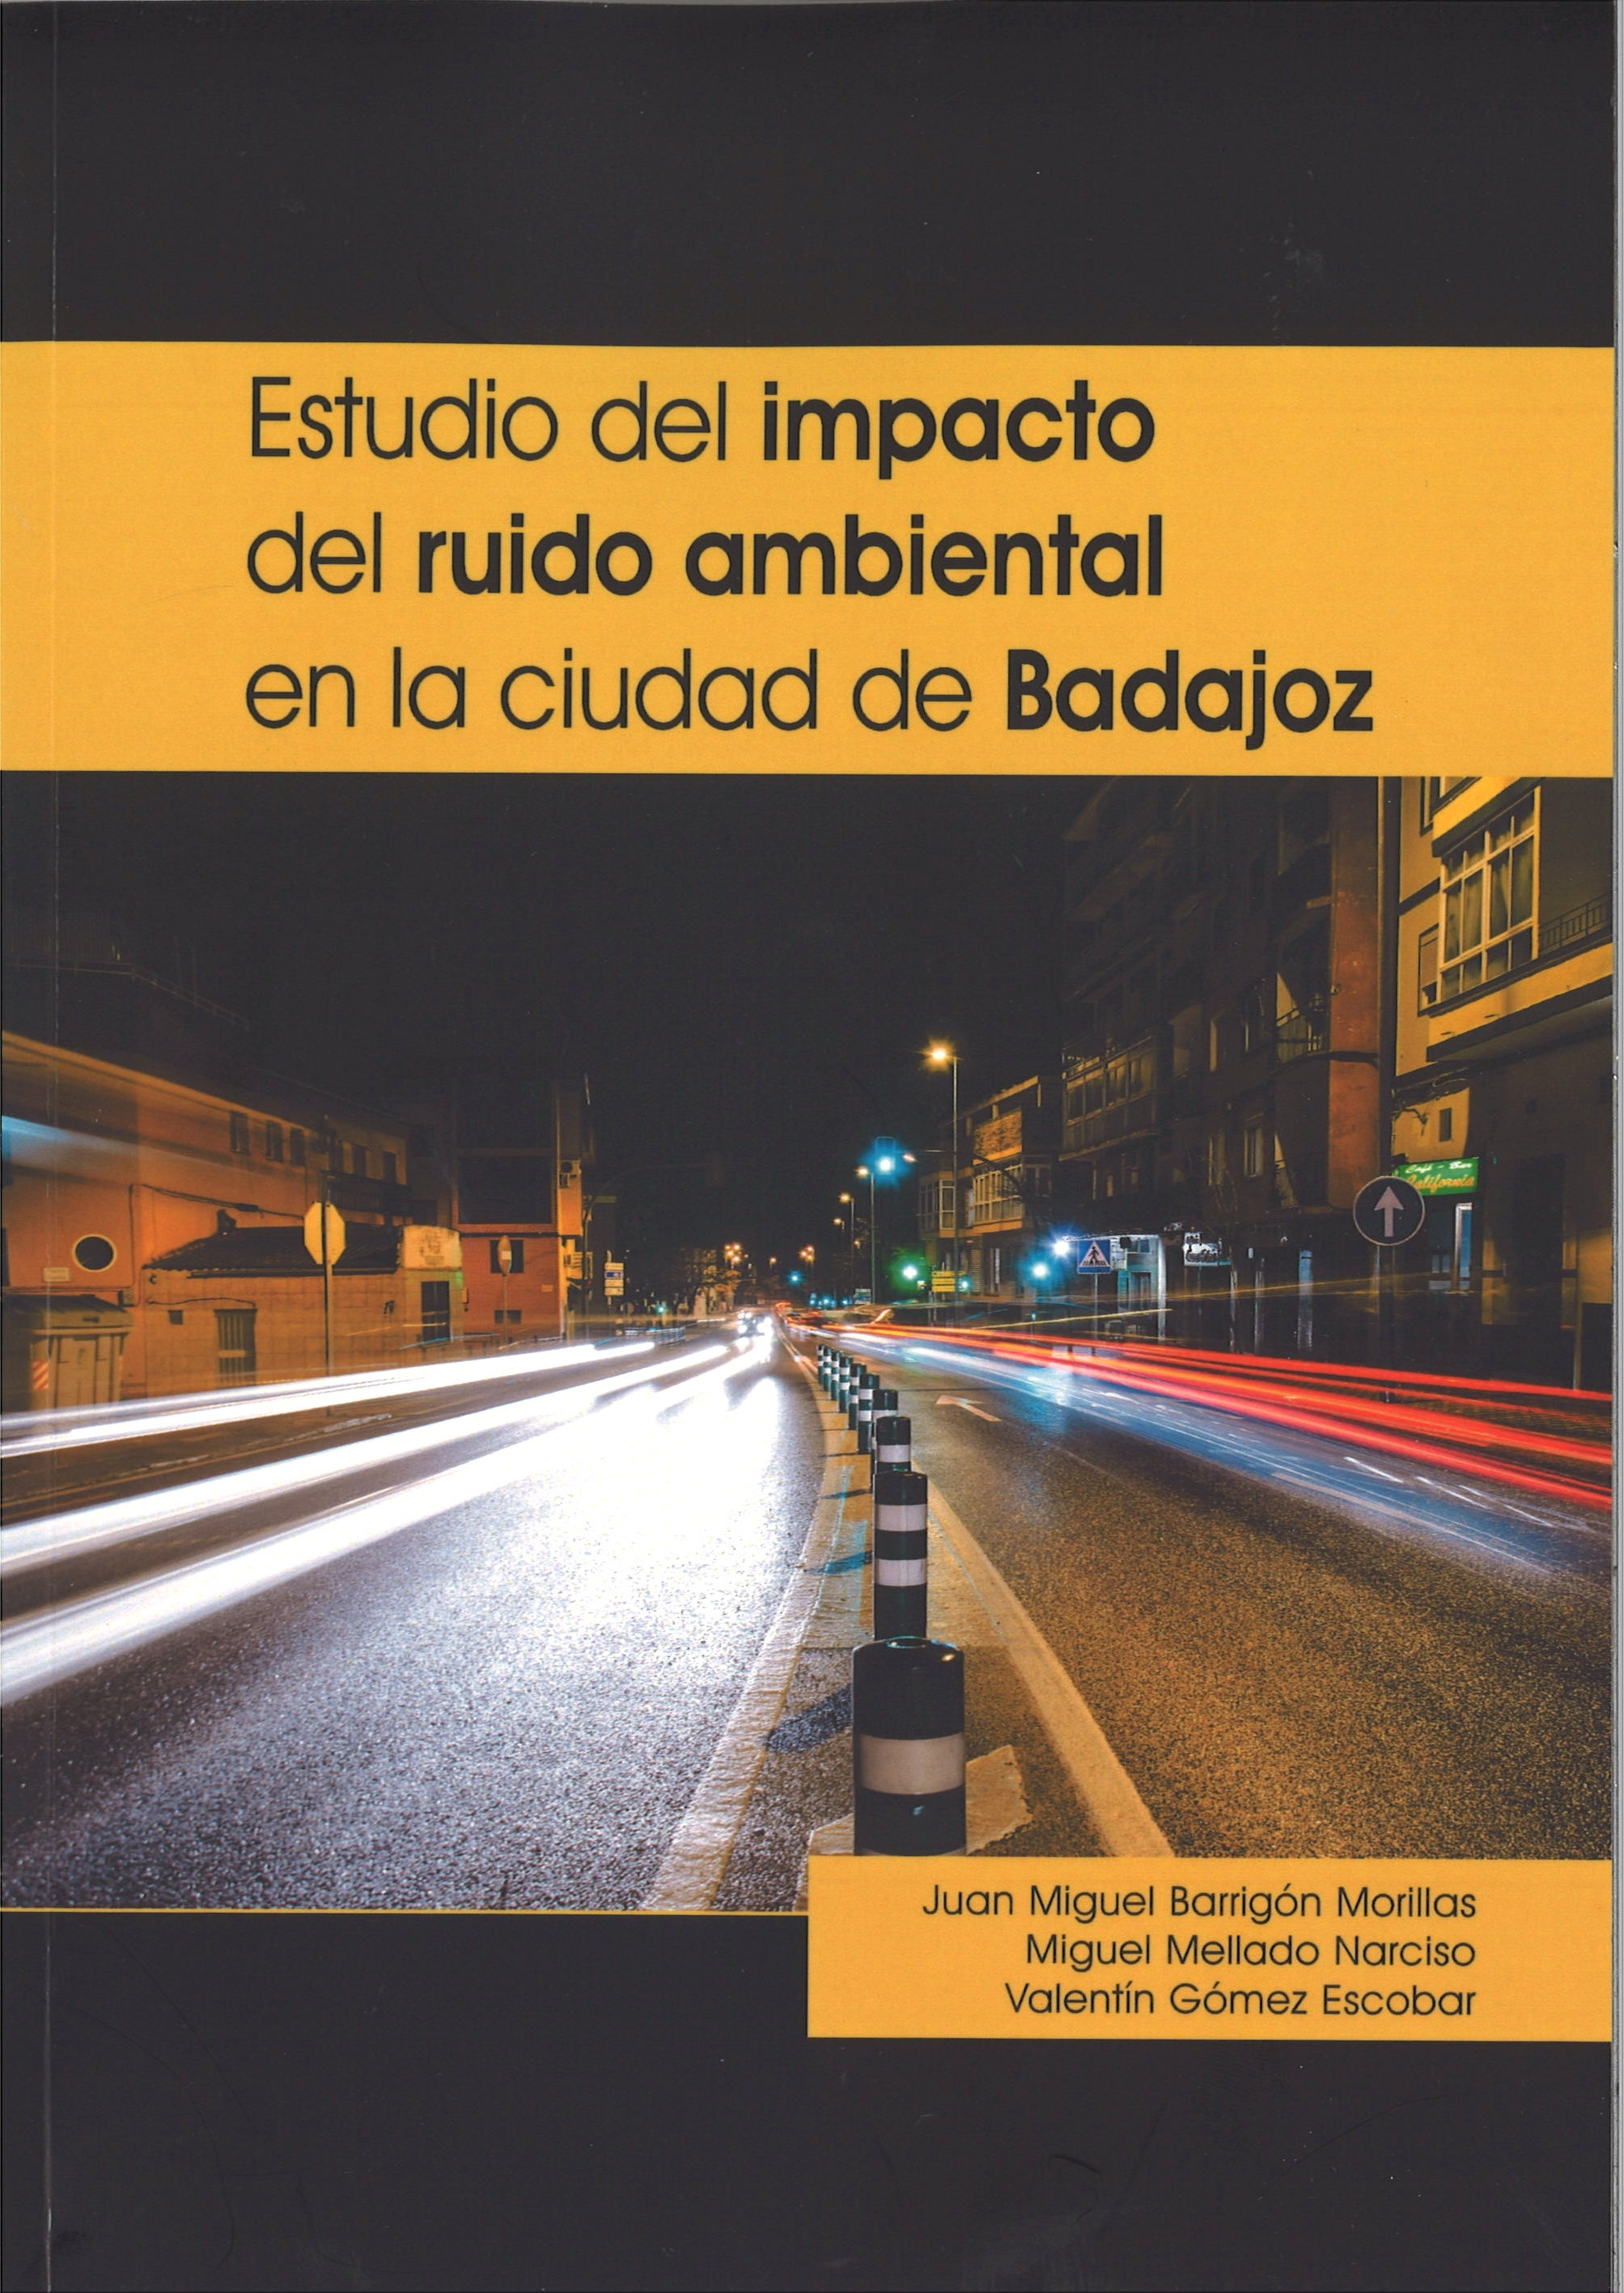 Imagen de portada del libro Estudio del impacto del ruido ambiental en la ciudad de Badajoz